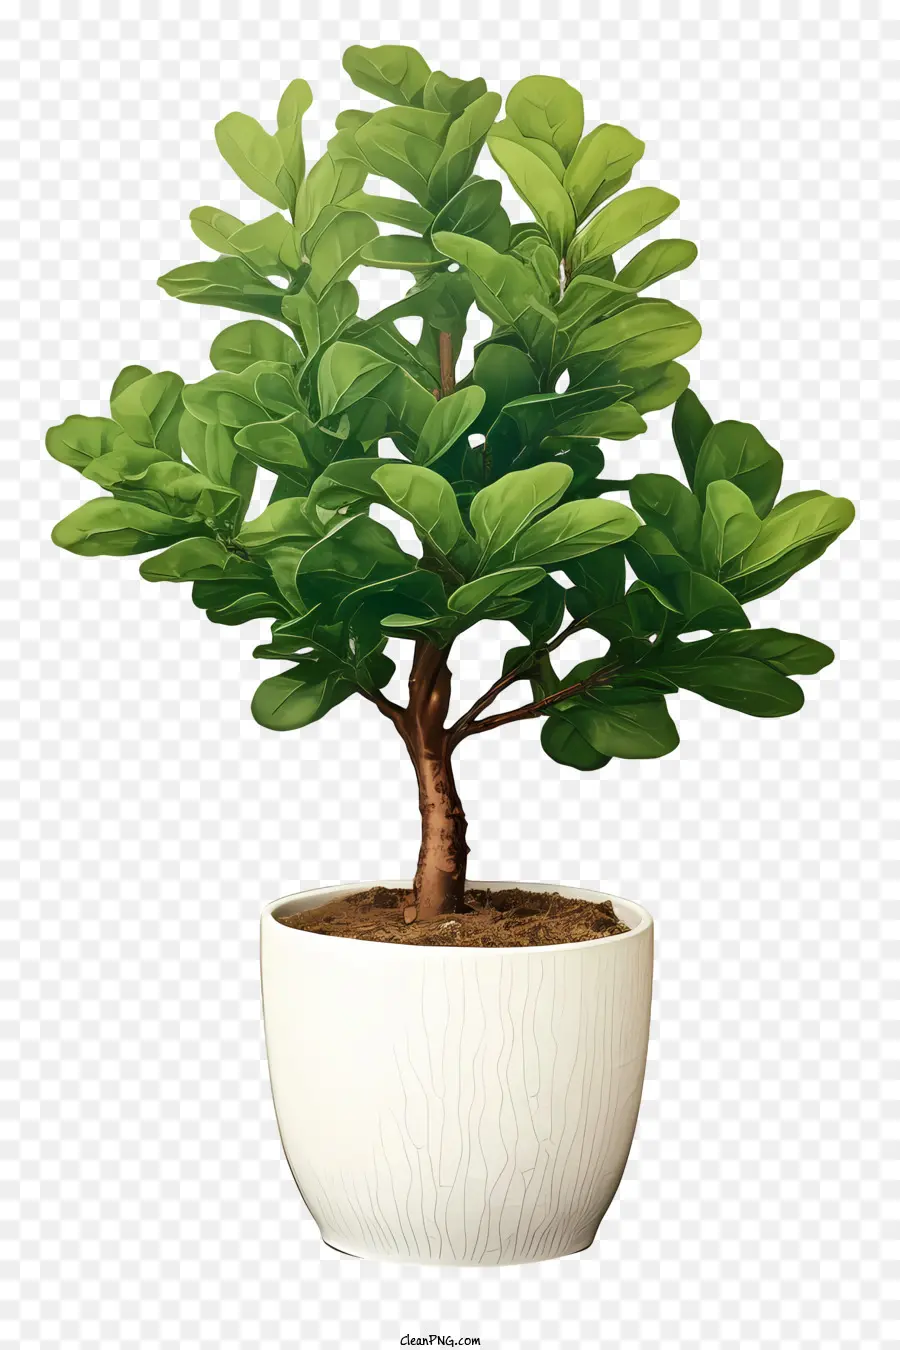 cây bonsai - Cây cây cảnh nhỏ trong nồi trắng, sắp xếp không đối xứng